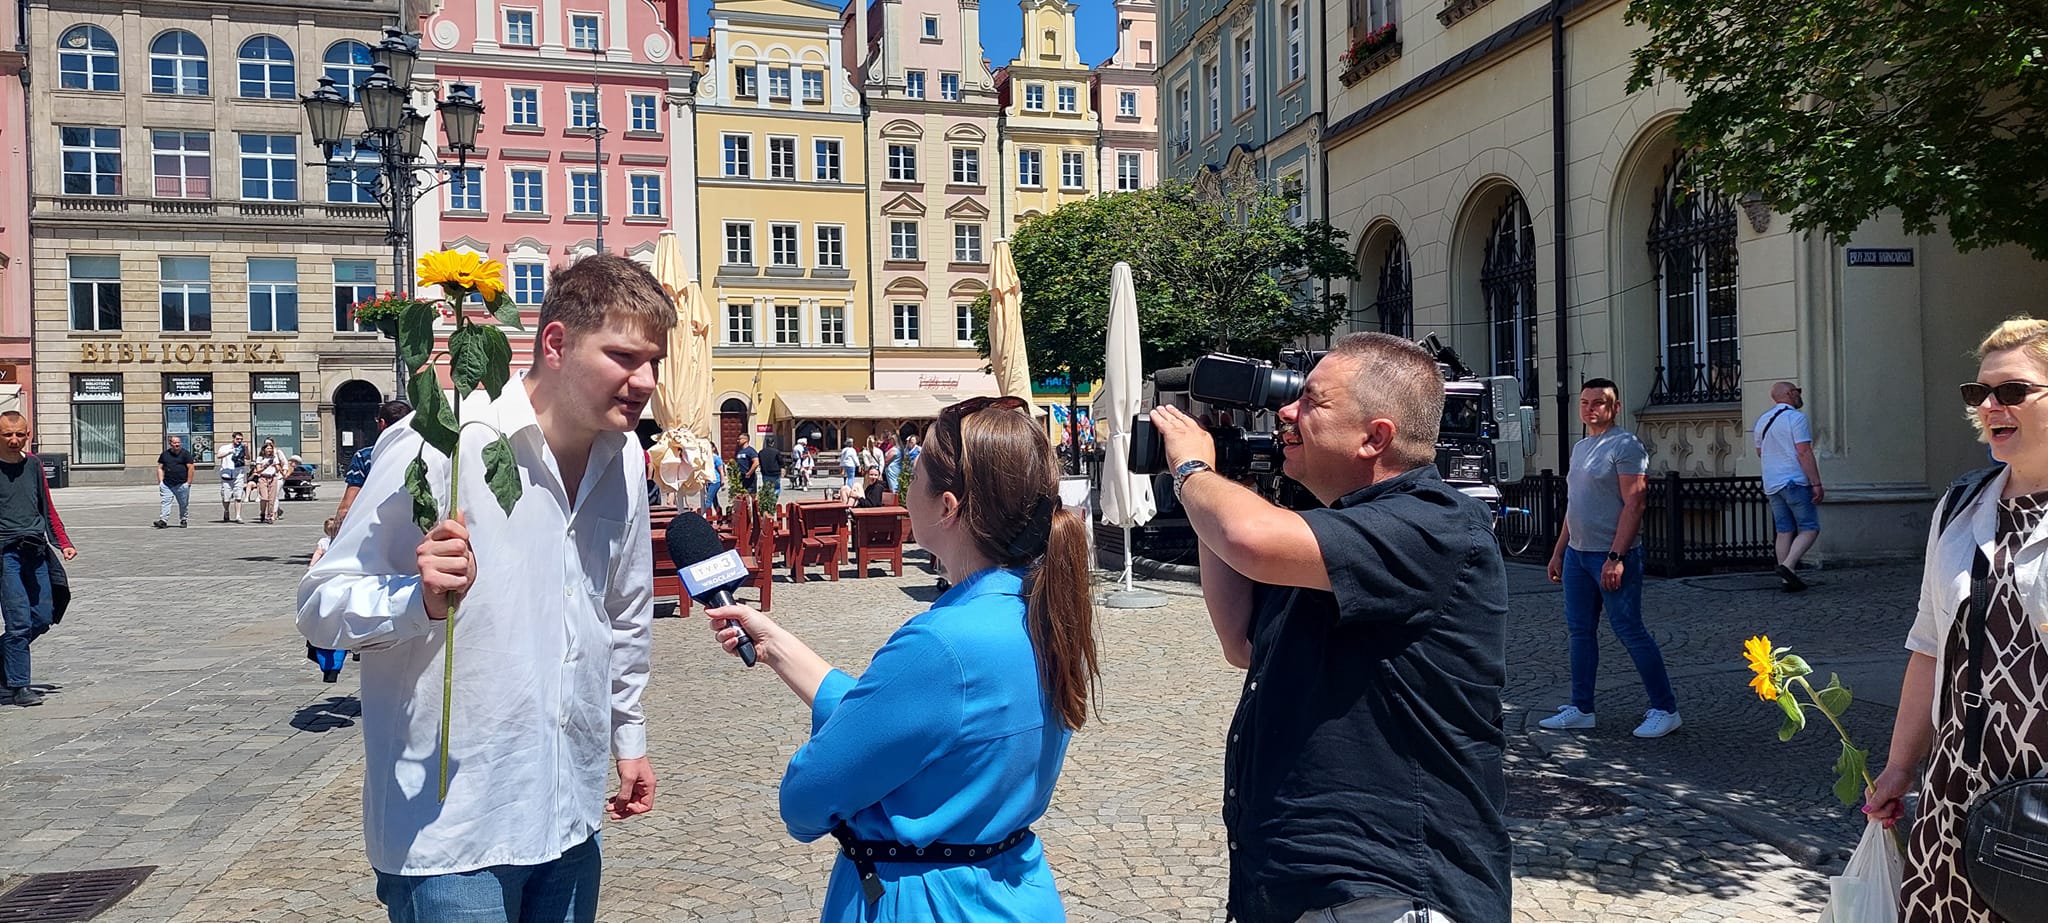 Zdjęcie przedstawia kilka osób na wrocławskim rynku, w tym podopieczny trzymający słonecznik i przemawiający do mikrofonu, który trzyma pani z TVP 3. Obok nich znajduje się kamerzysta, który nagrywa wydarzenie.